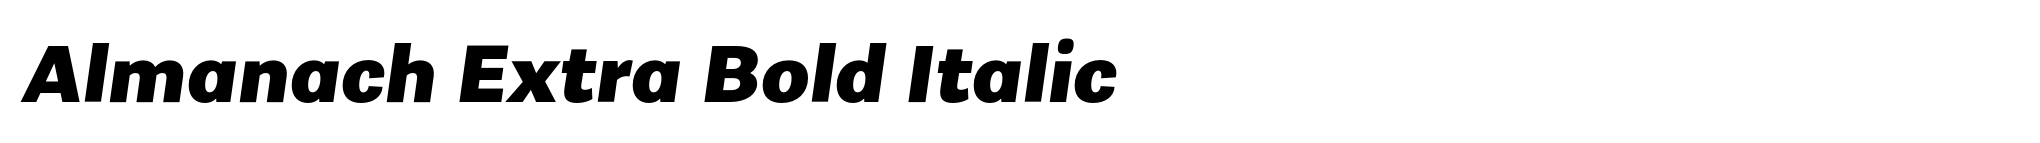 Almanach Extra Bold Italic image